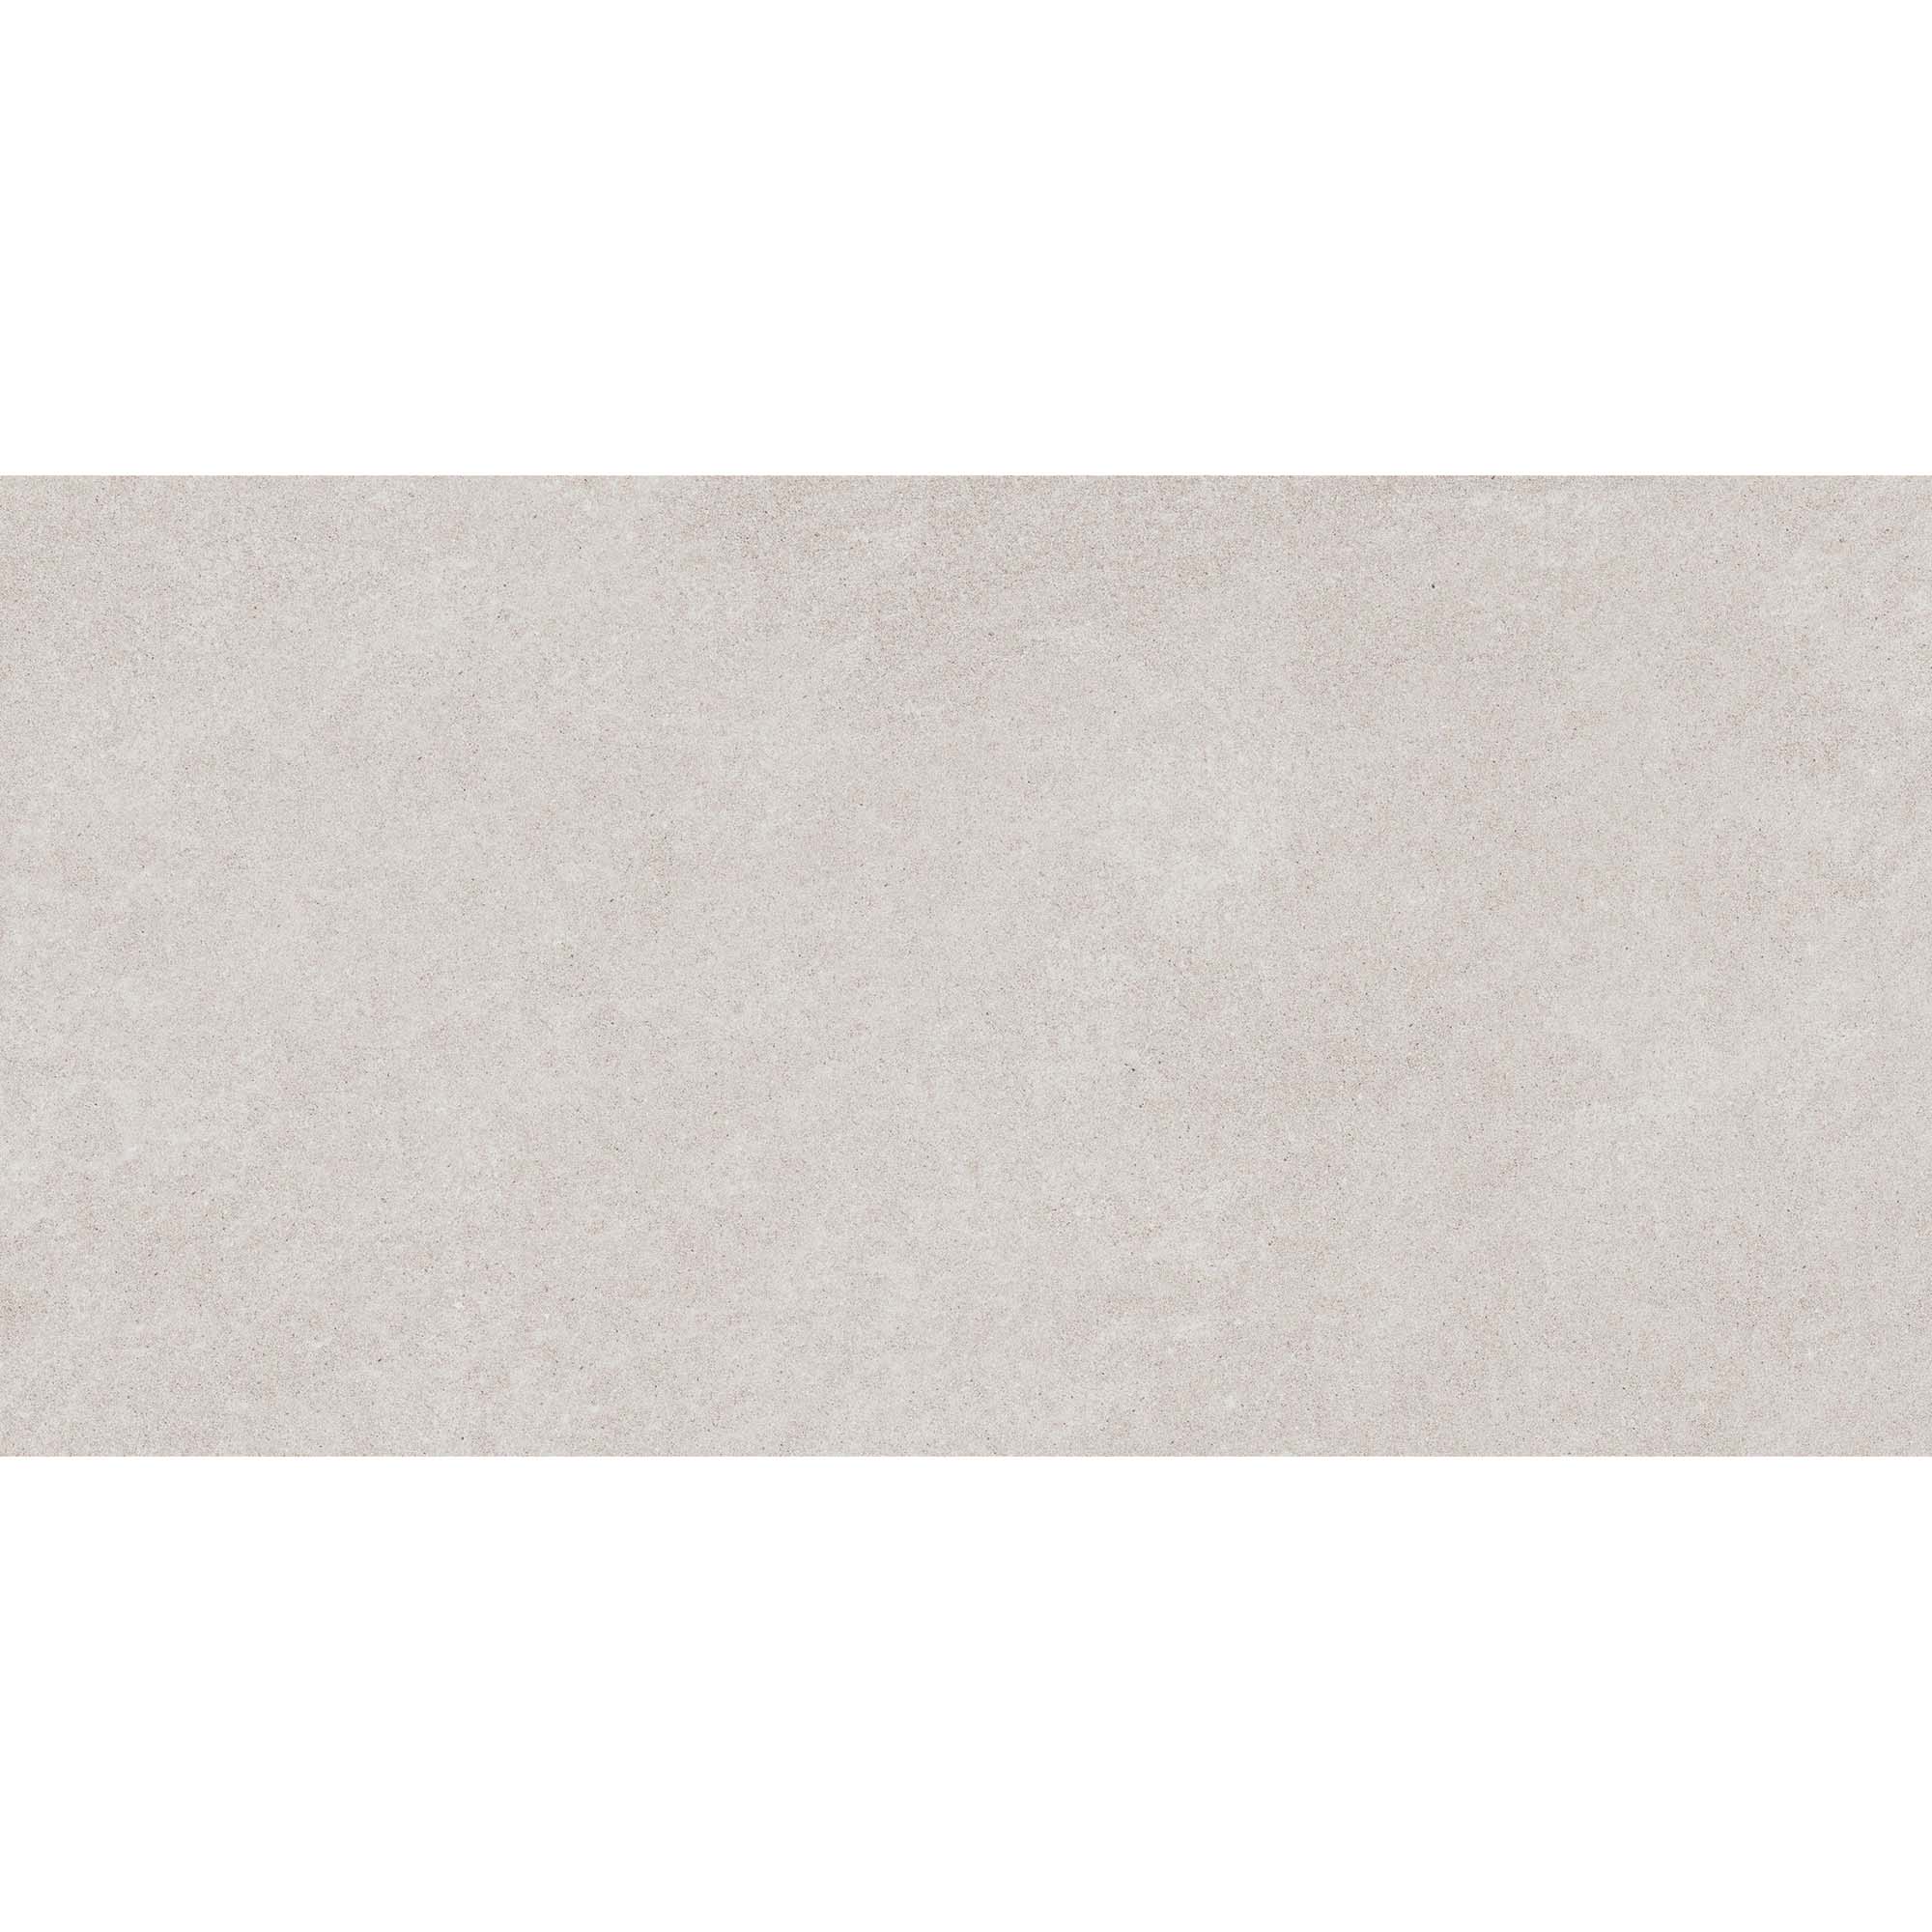 Плитка Estima Luna LN00 неполированный белый 60x120 см плитка estima montis mn01 36565 60х120 см неполированный белый